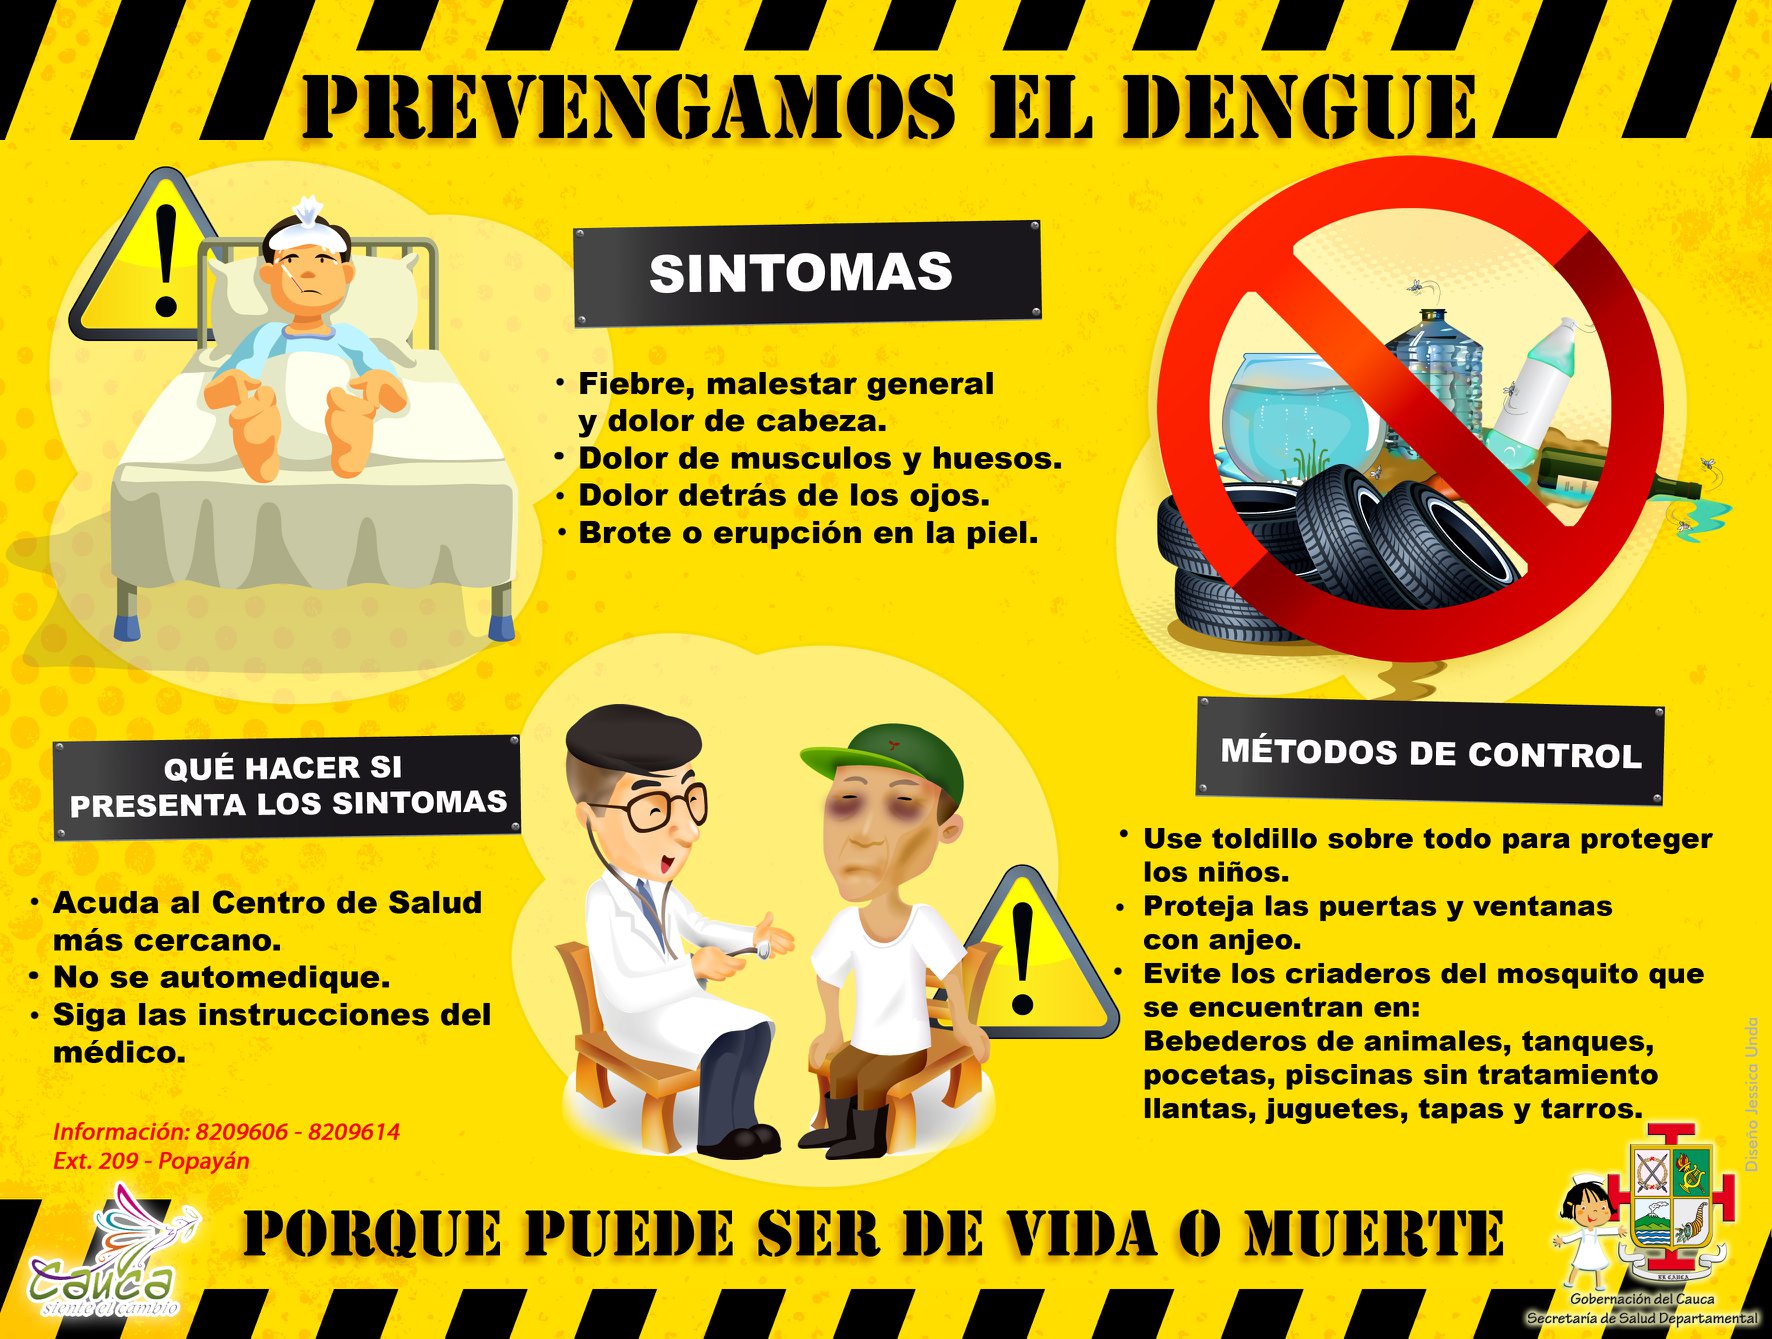 Prevengamos el dengue